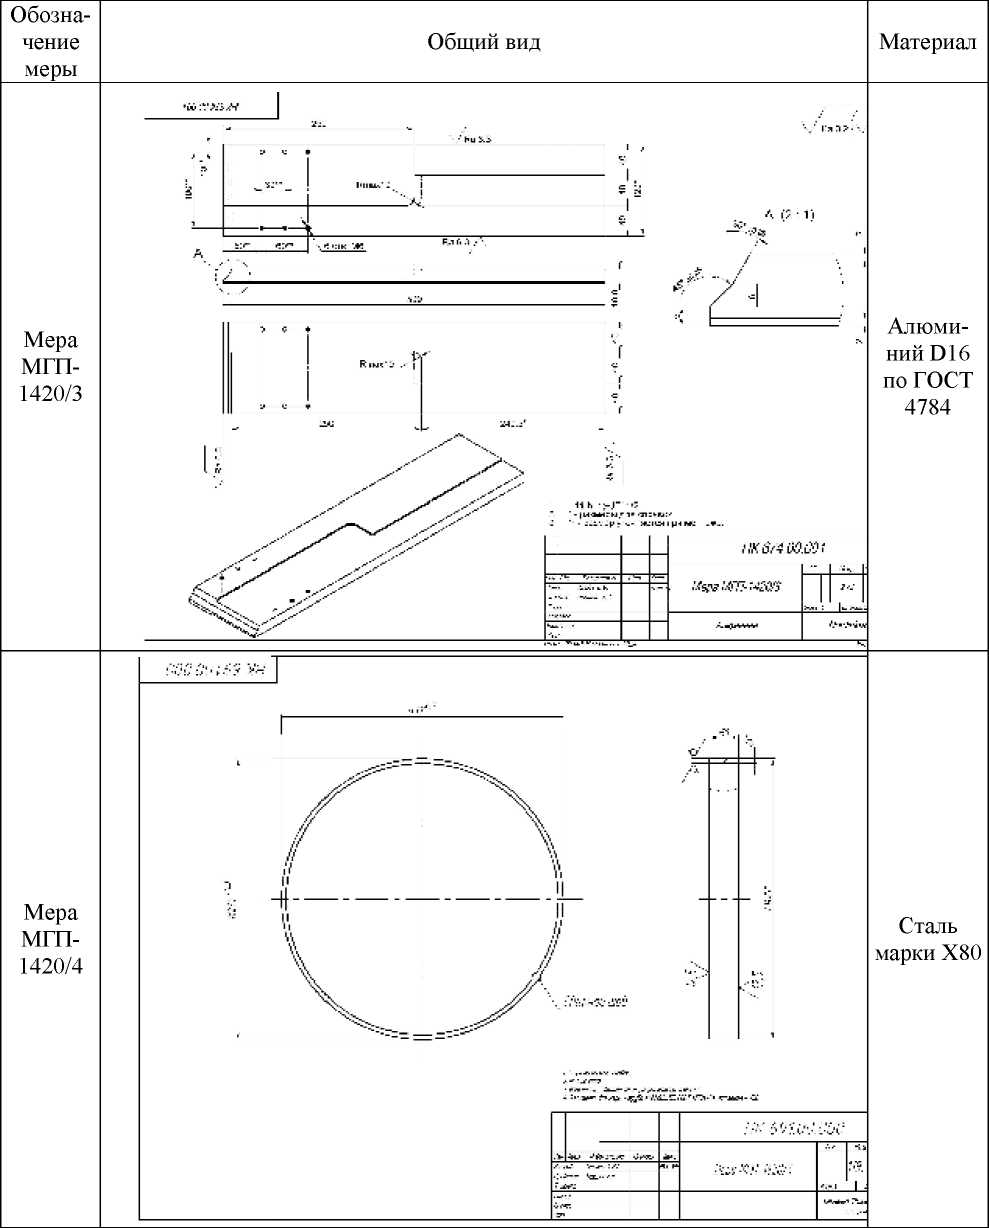 Внешний вид. Комплекты мер моделей дефектов электросварных труб, http://oei-analitika.ru рисунок № 3